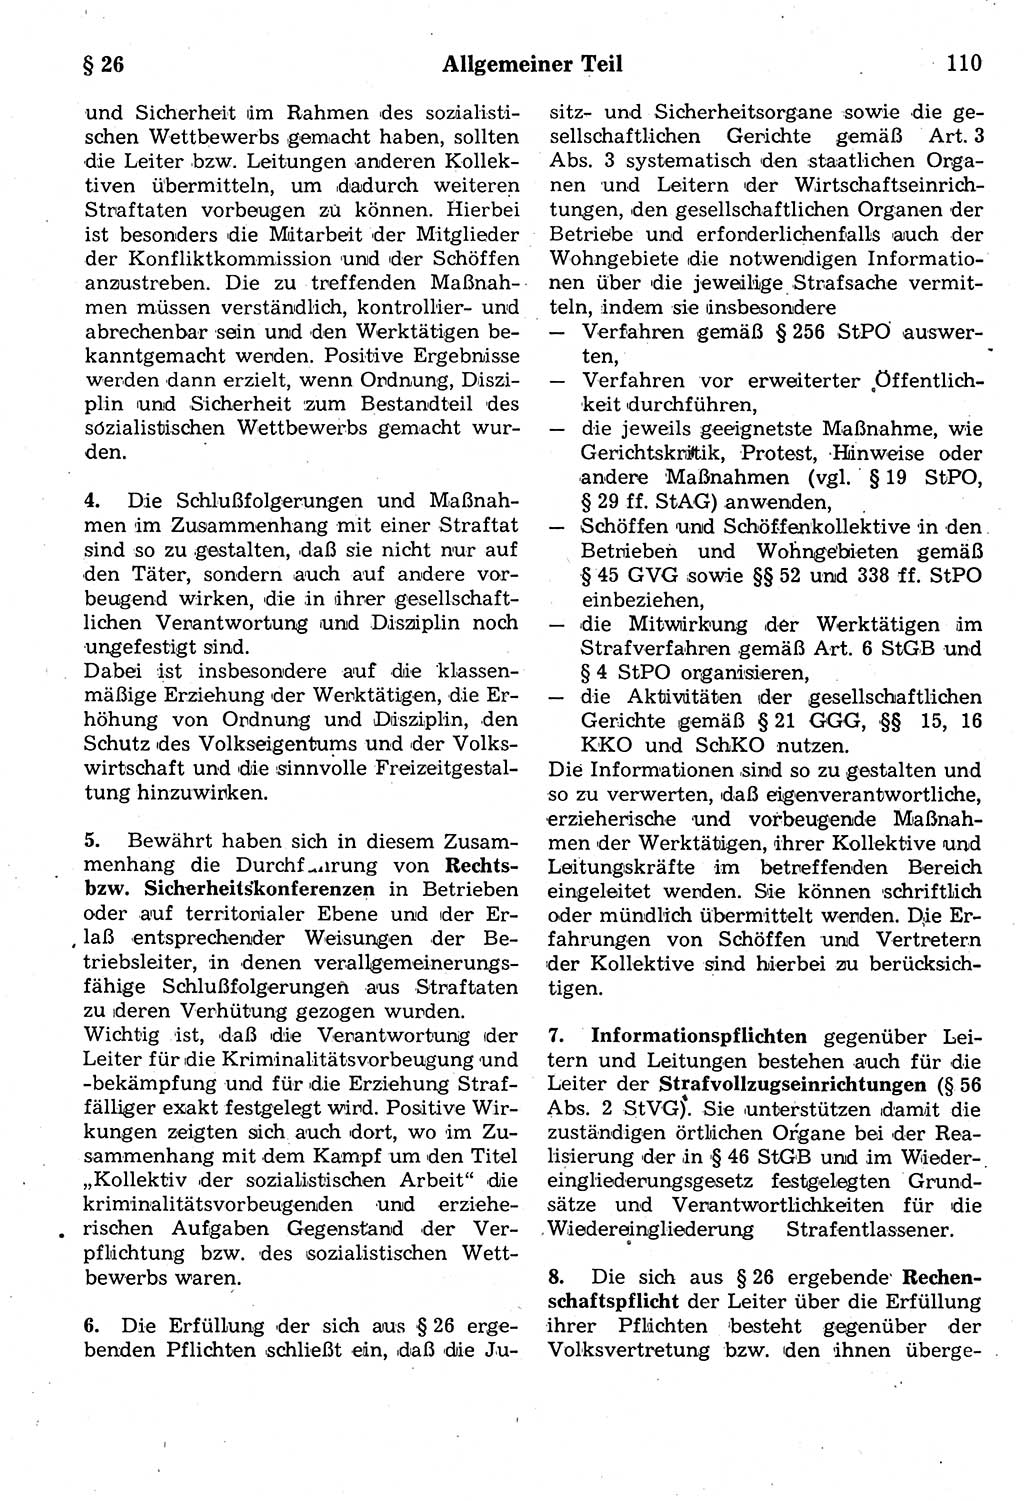 Strafrecht der Deutschen Demokratischen Republik (DDR), Kommentar zum Strafgesetzbuch (StGB) 1987, Seite 110 (Strafr. DDR Komm. StGB 1987, S. 110)